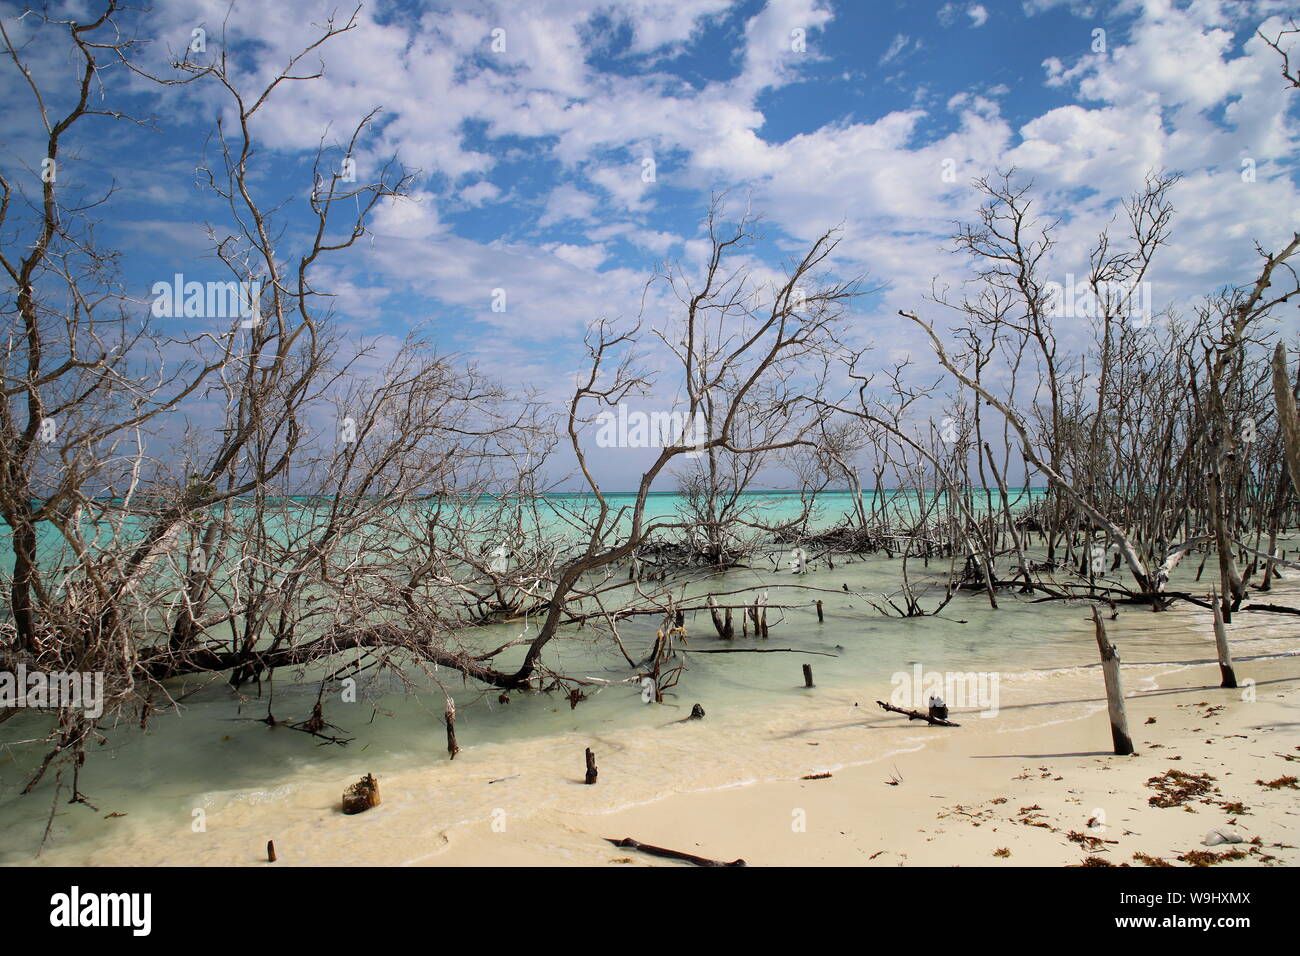 Playa de Cayo Levisa en Pinar del Rio, Cuba. Stock Photo